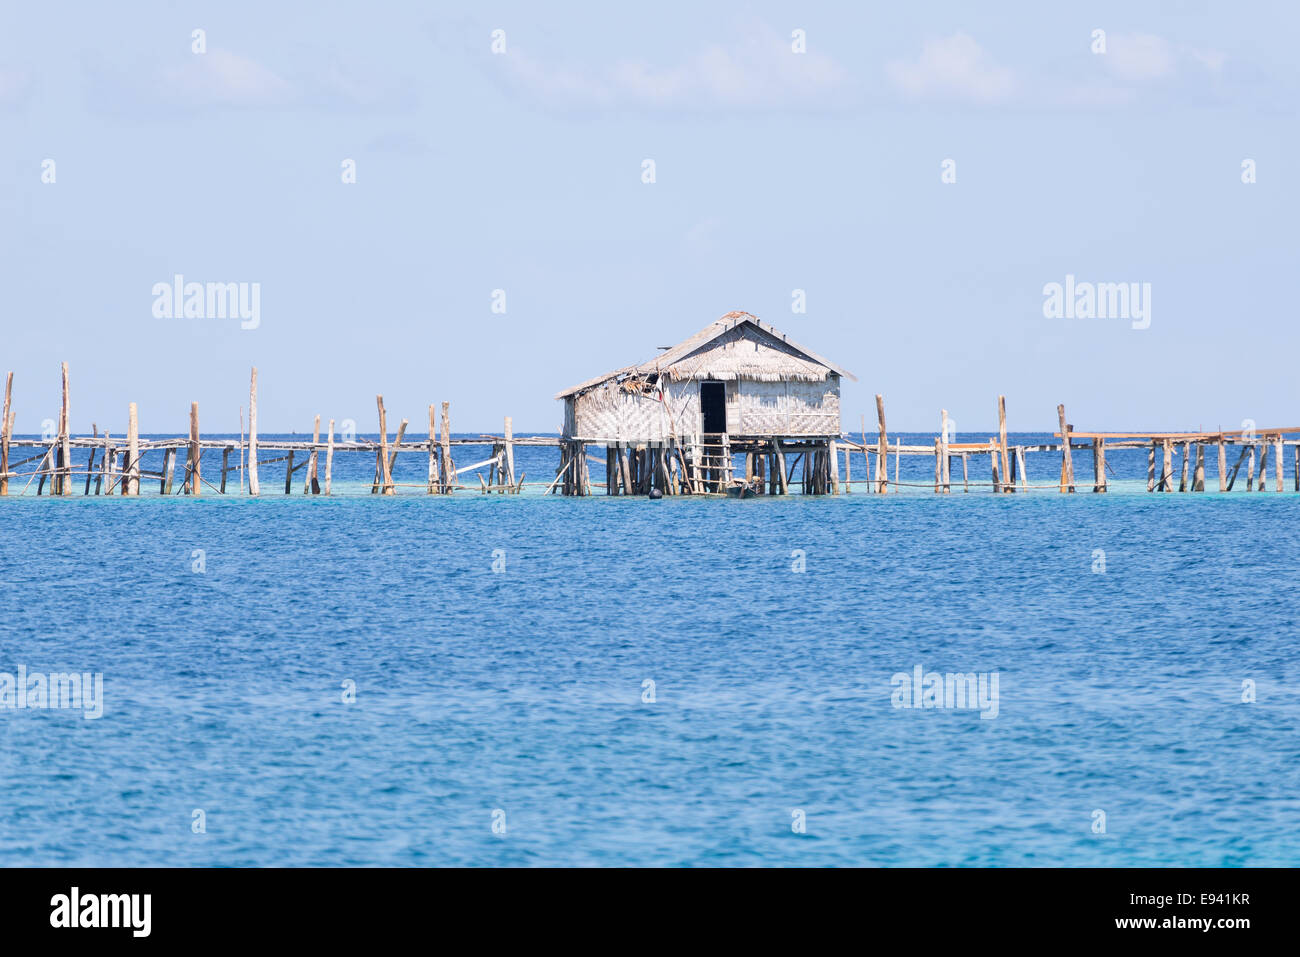 Stilt hut e promenade appartenenti a Bajau (zingari del mare) villaggio di pescatori in remote isole Togean, Sulawesi centrali, Ind Foto Stock